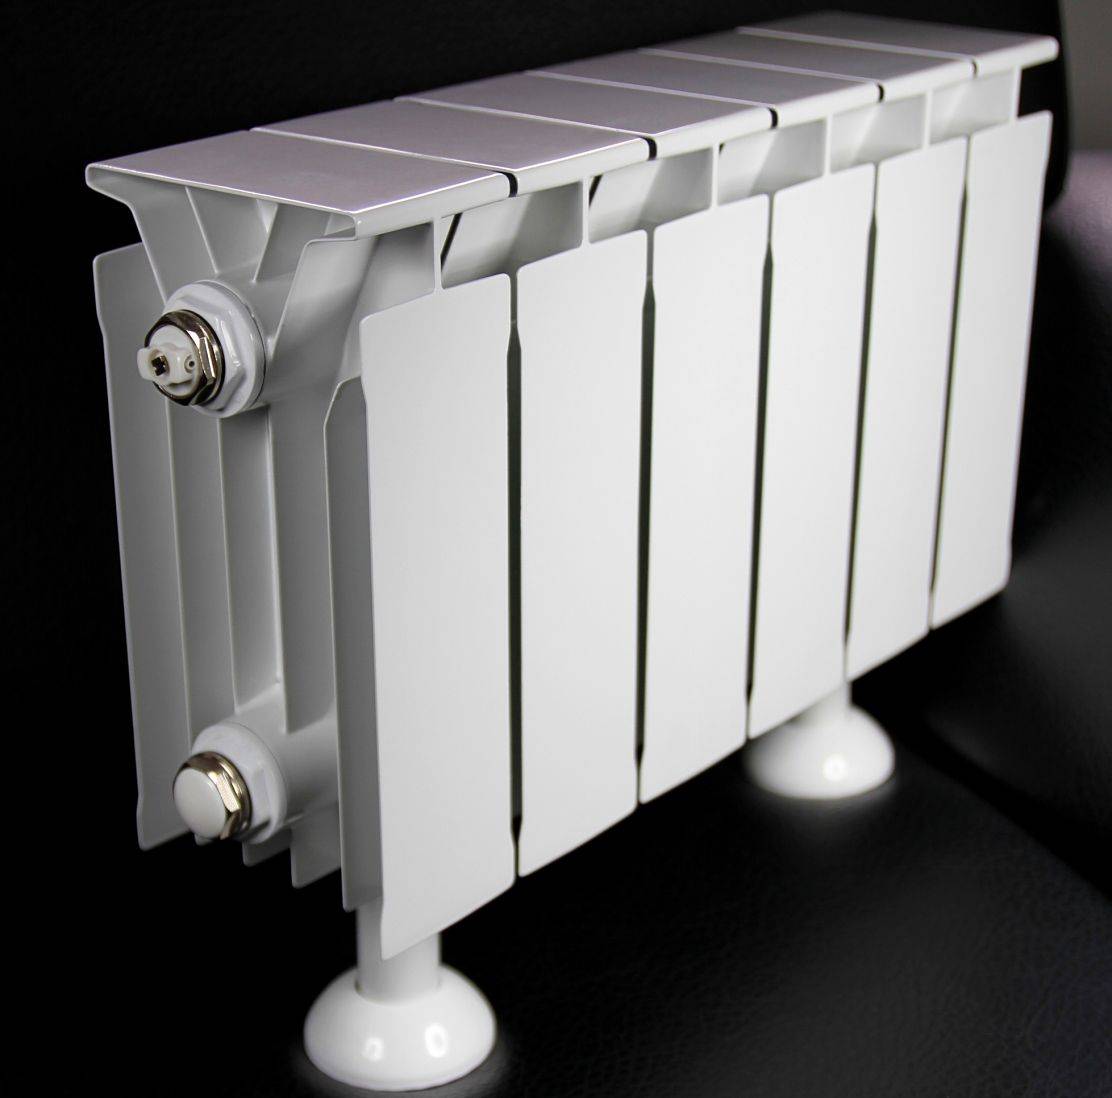 Какие радиаторы отопления —  лучше алюминиевые или биметаллические?